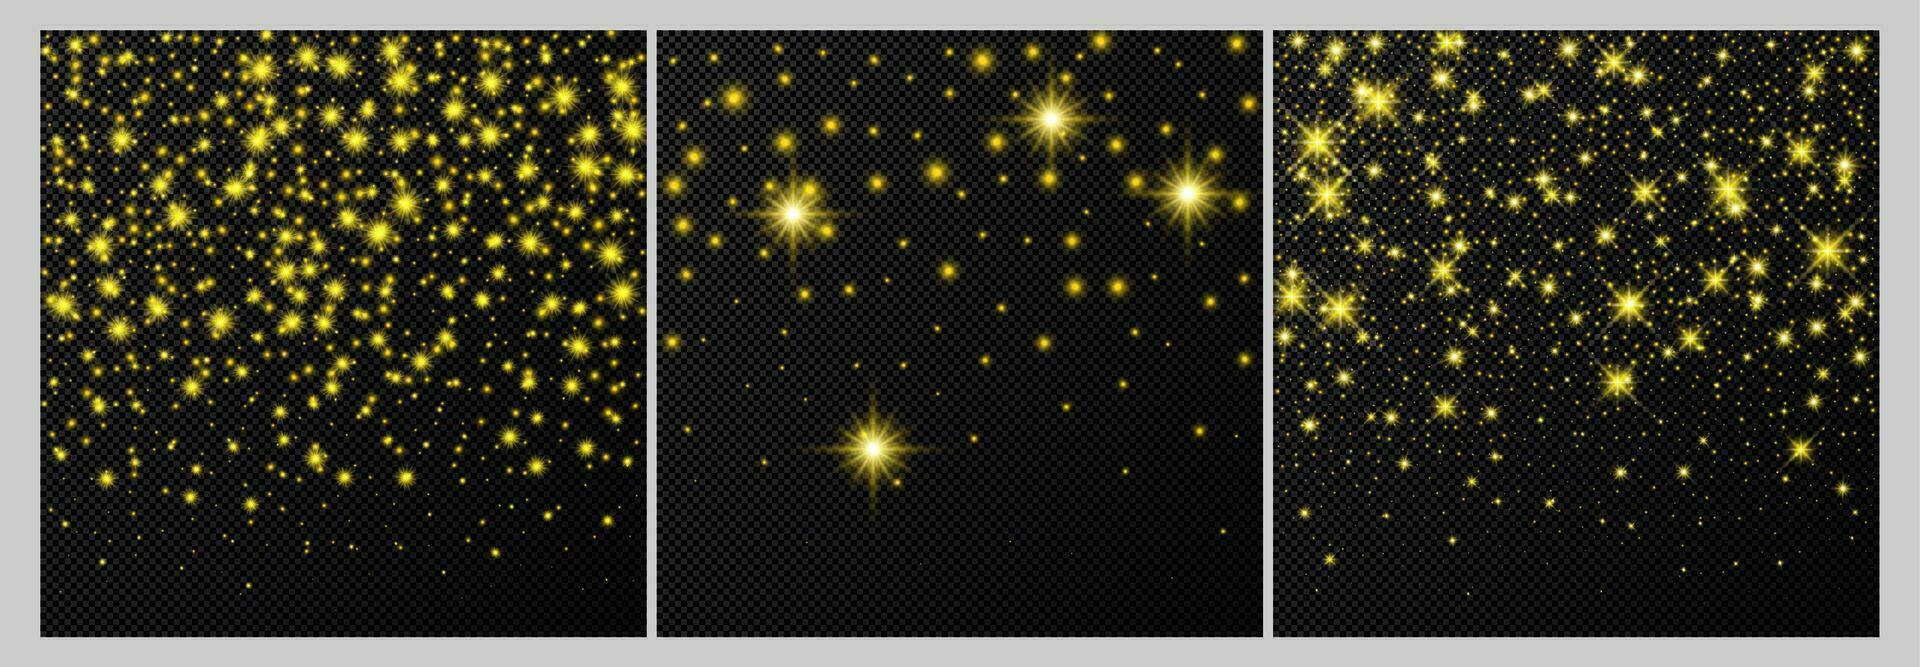 uppsättning av tre guld bakgrunder med stjärnor och damm pärlar isolerat på mörk bakgrund. fest magisk jul lysande ljus effekt. vektor illustration.